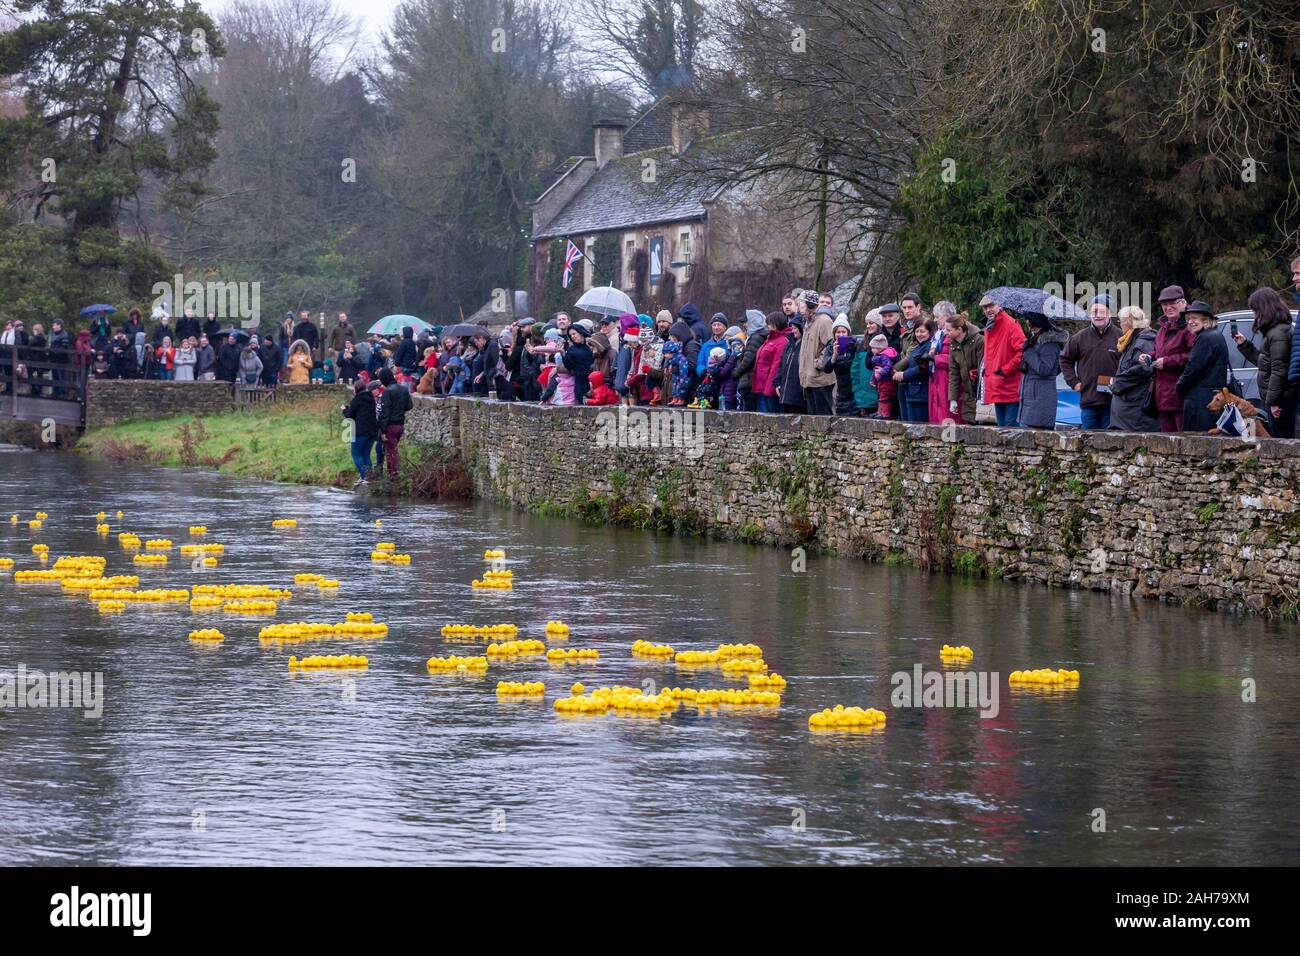 Bibury, Gloucestershire, 26 janvier 2019, lendemain de Noël annuel de Bibury course de canards de bienfaisance sur la rivière Colne à l'état humide matin détrempé, la première course est de 150 course duck a débuté à 11 h où les gens parrain pour £10.00 chaque et le promoteur qui nomme la charité qu'ils aimeraient que la somme totale portée à rendez-vous, le même attire une foule de personnes à surveiller avec plus de 2 000 canards en caoutchouc sur la rivière pendant l'événement, qui est organisé par le Club de Cricket de Bibury. Credit : Keith J Smith./Alamy Live News Banque D'Images